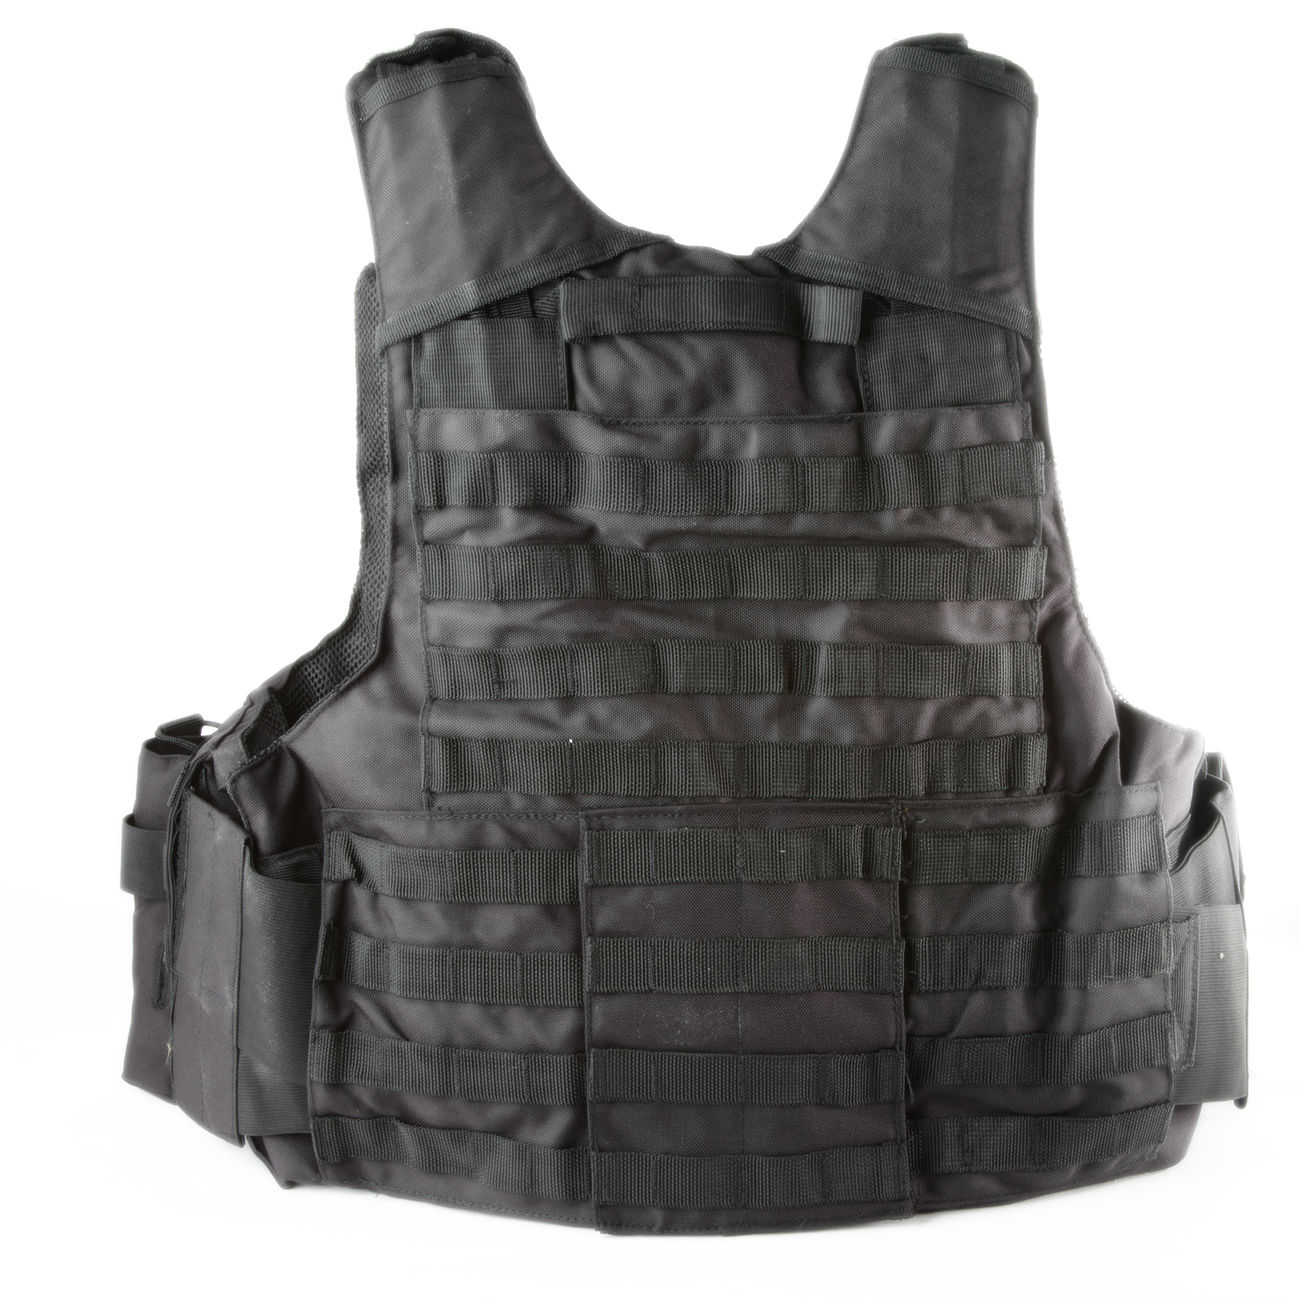 101 INC. Raptor Tactical Vest schwarz Bild 1